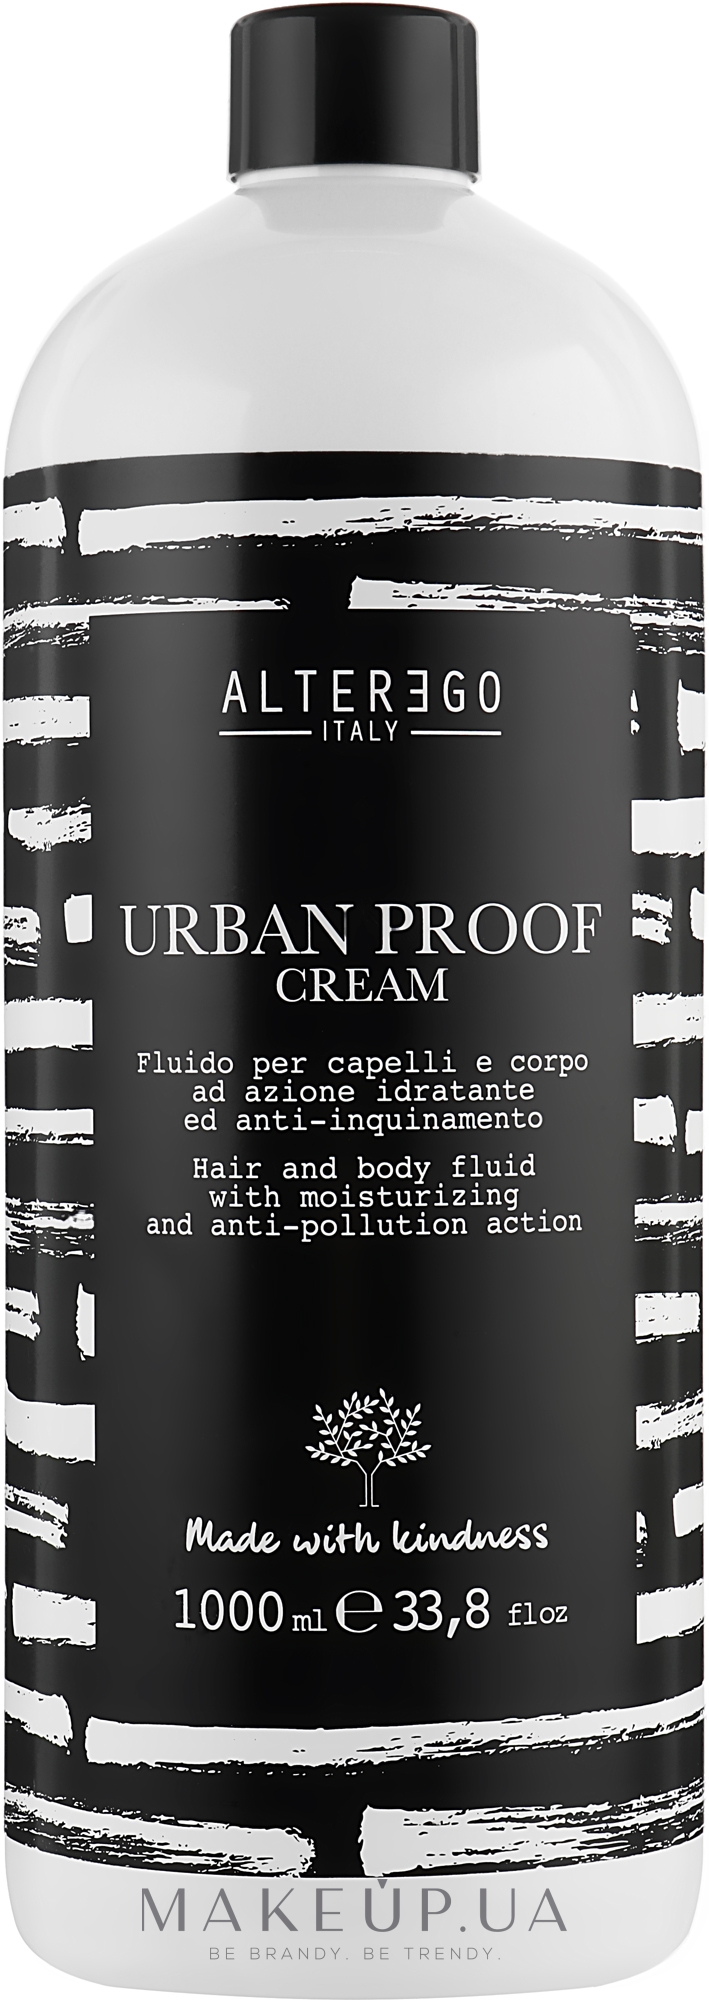 Зволожувальний і захисний лосьйон для волосся і тіла - Alter Ego Urban Proof Cream — фото 1000ml